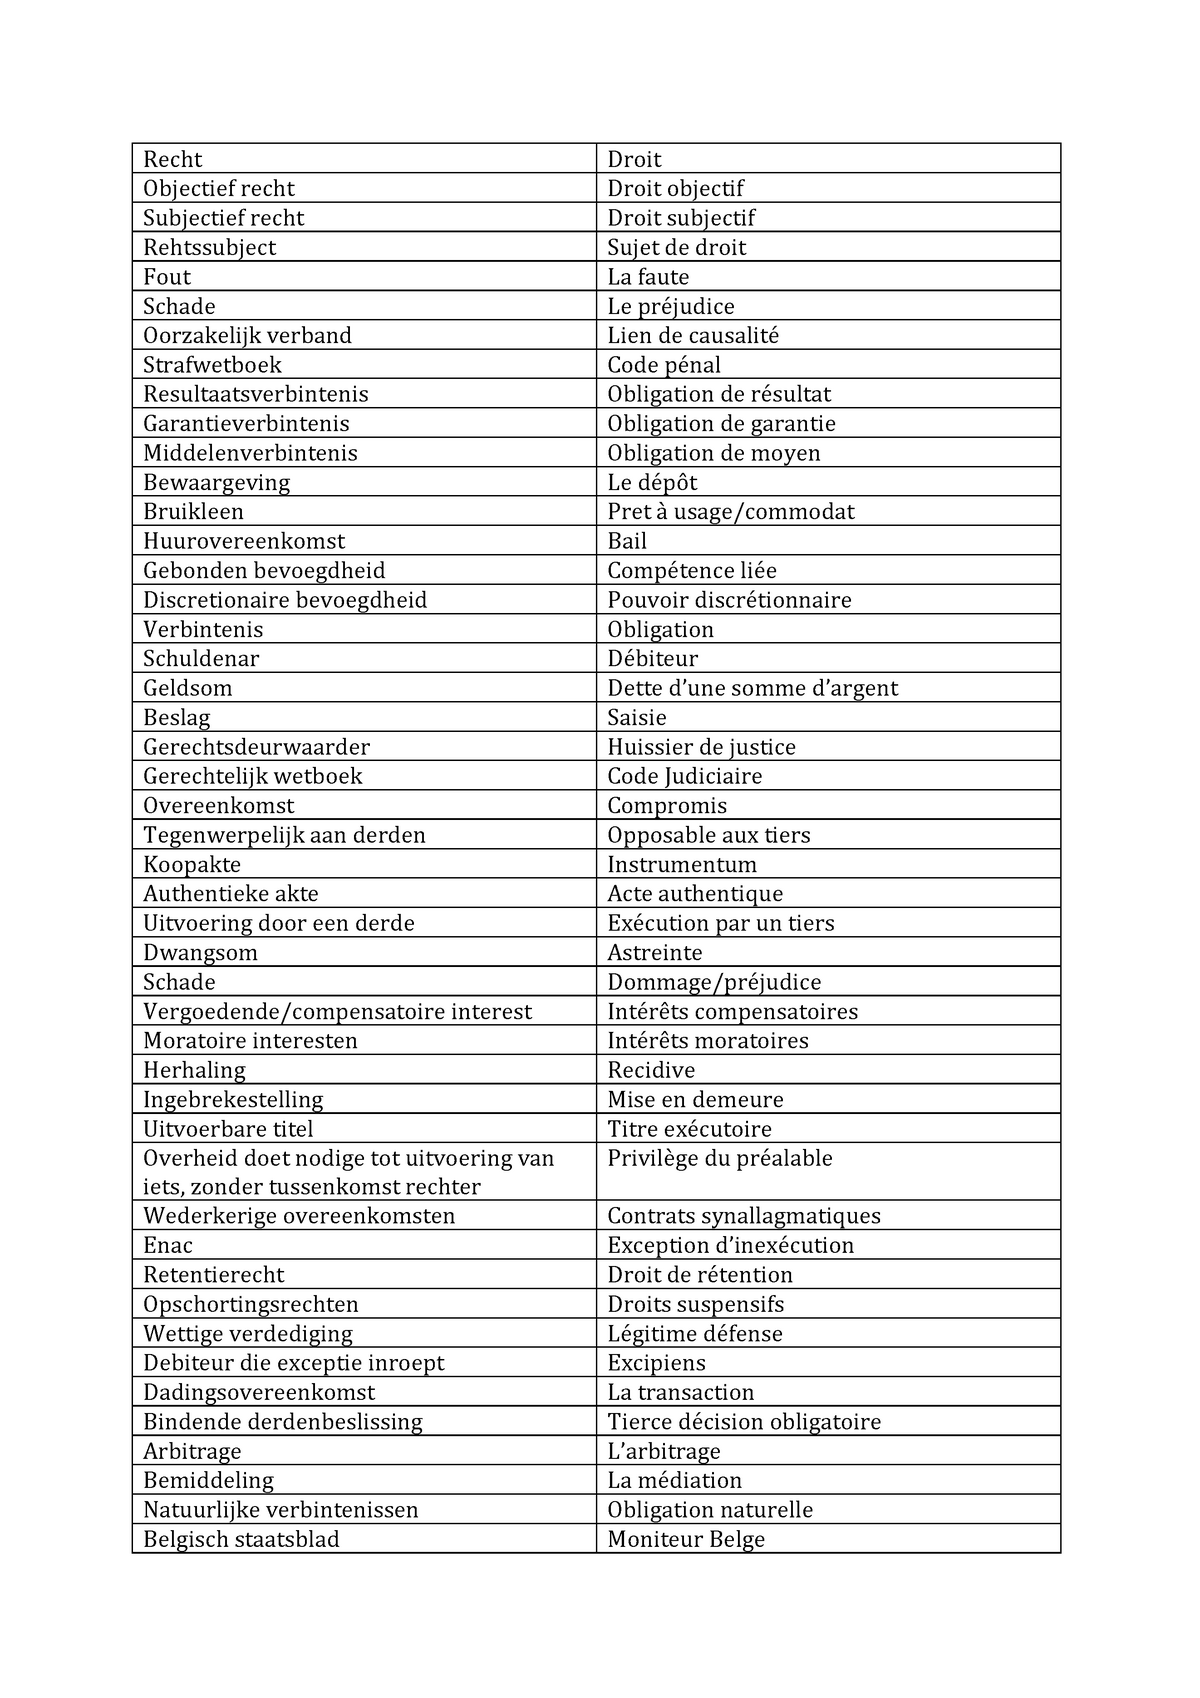 assignment list vertaling